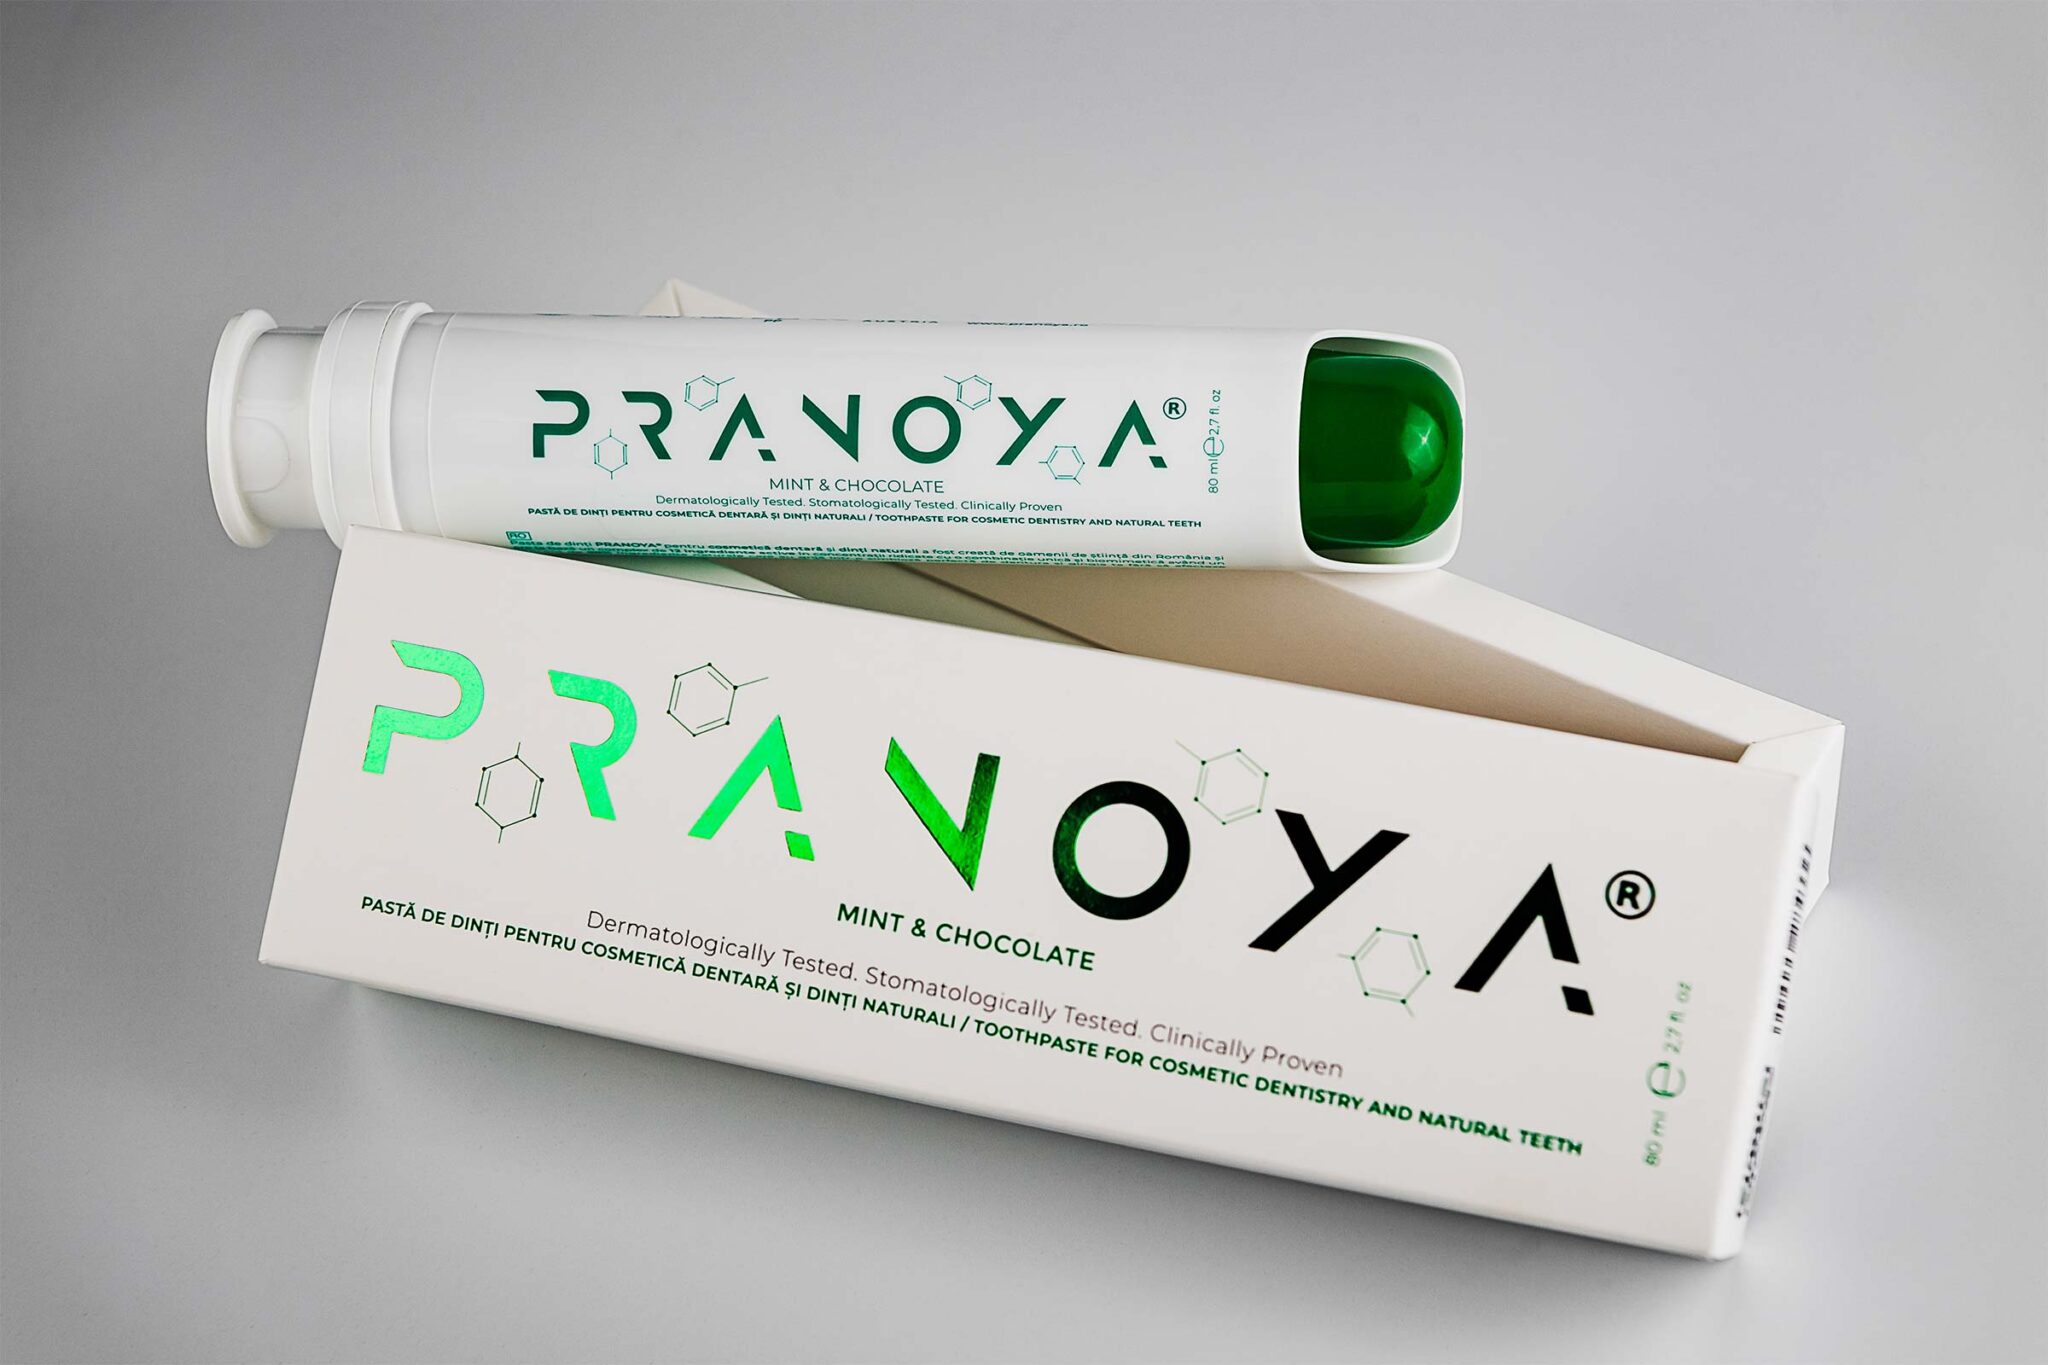 PRANOYA toothpaste for dental veneers and natural teeth